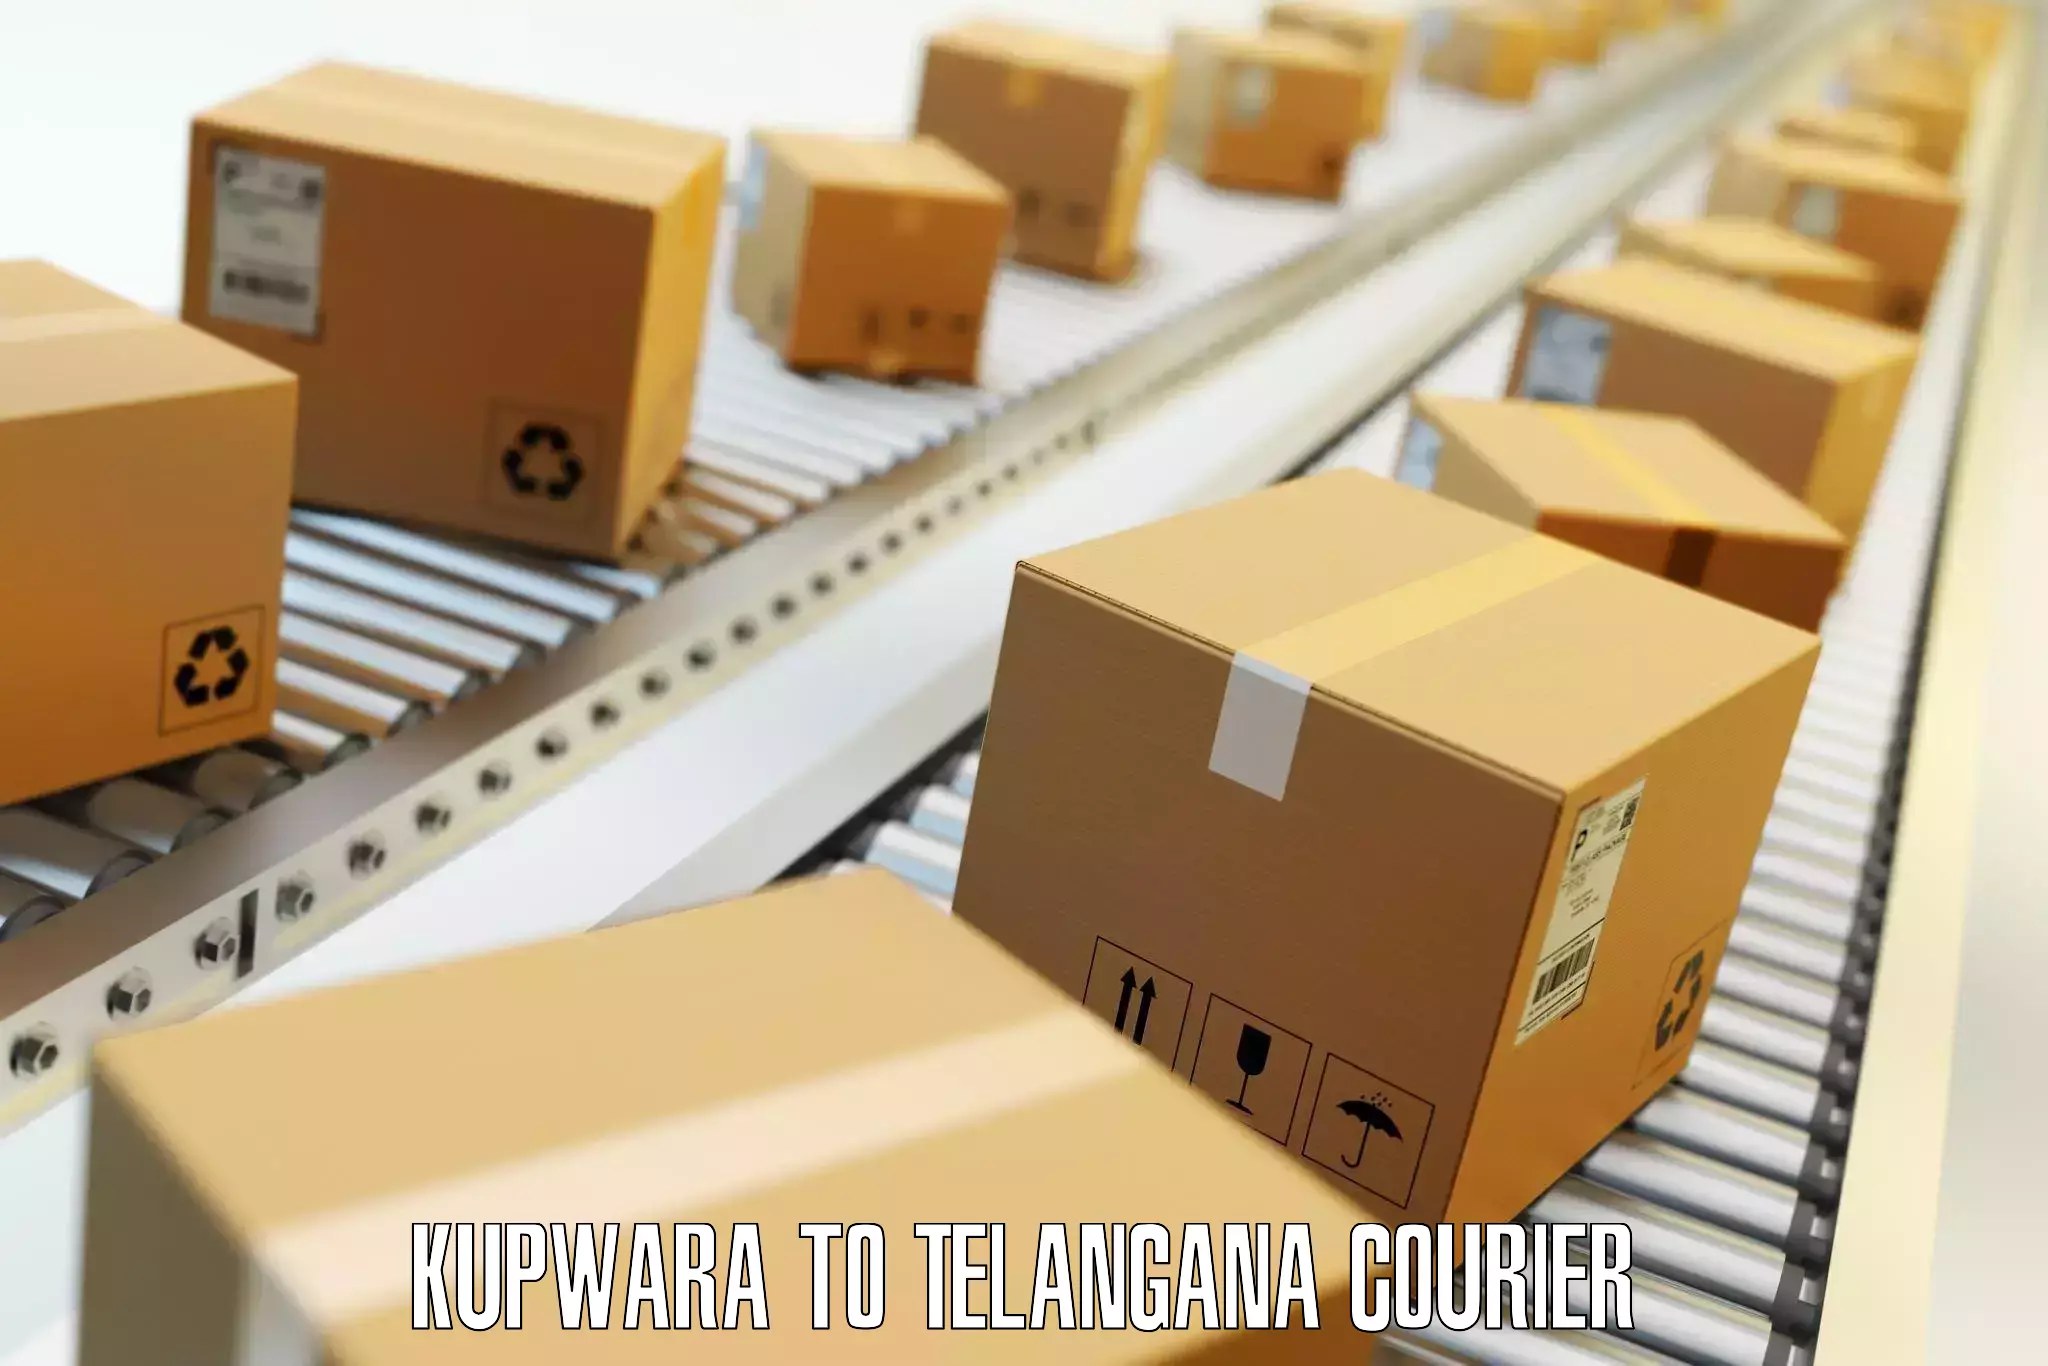 Hassle-free luggage shipping in Kupwara to Adilabad